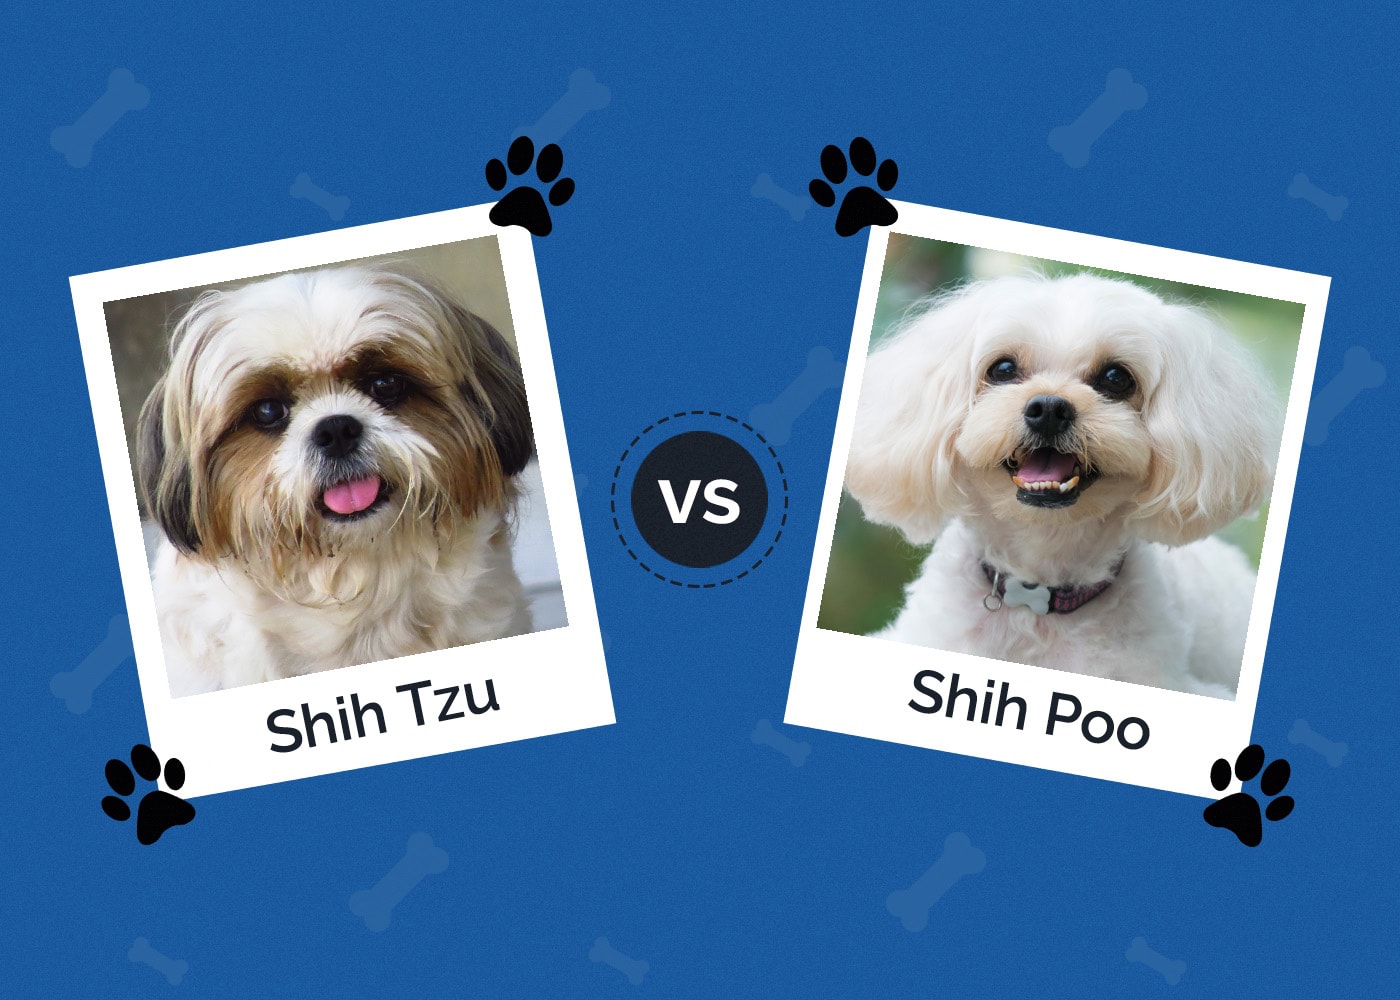 Shih Tzu vs Shih Poo